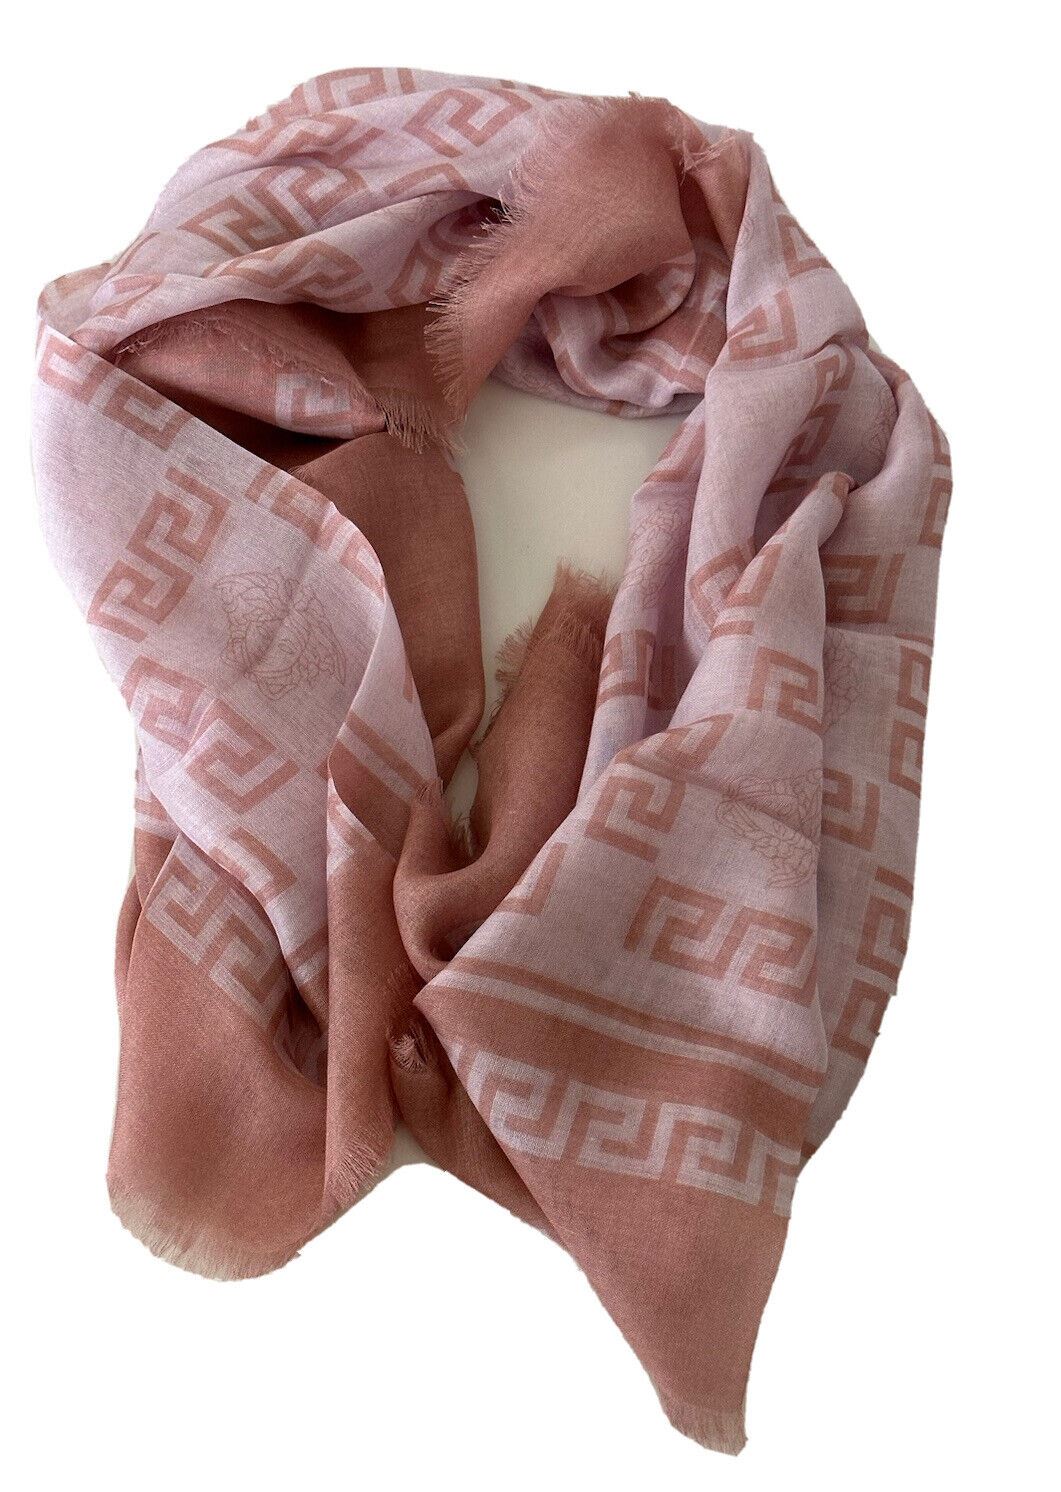 NWT $500 Versace Розовый шарф с принтом Medusa/греческий ключ 52Wx52L IF01401S Италия 